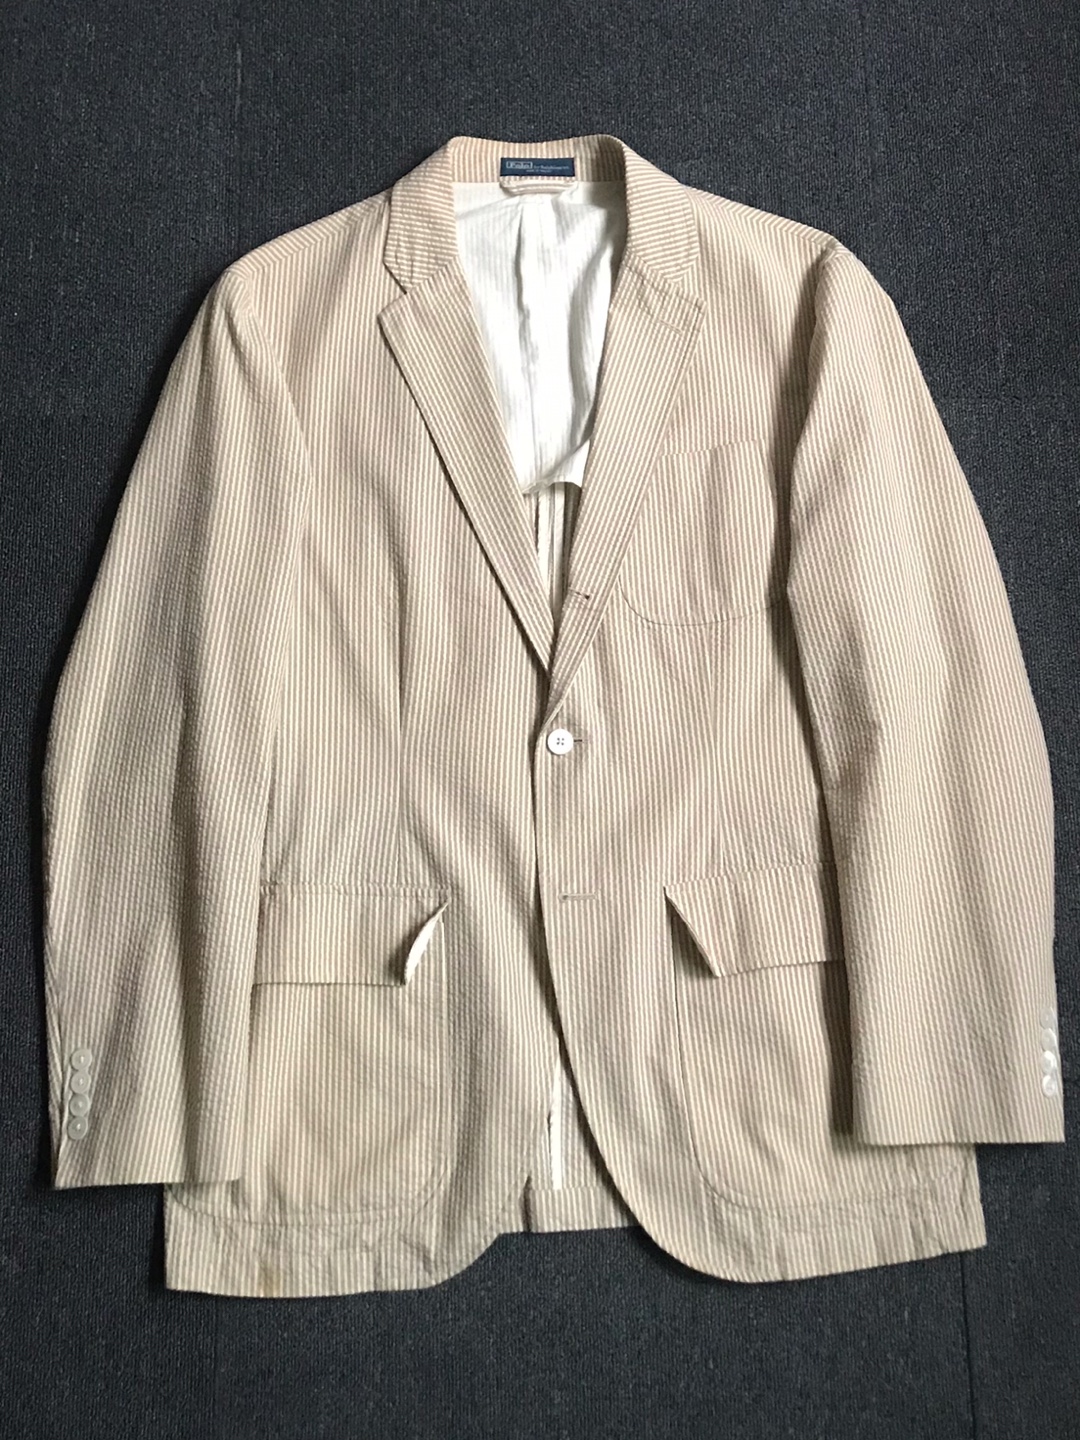 Polo RL seersucker 3/2 sport jacket (46R size, 105 추천)